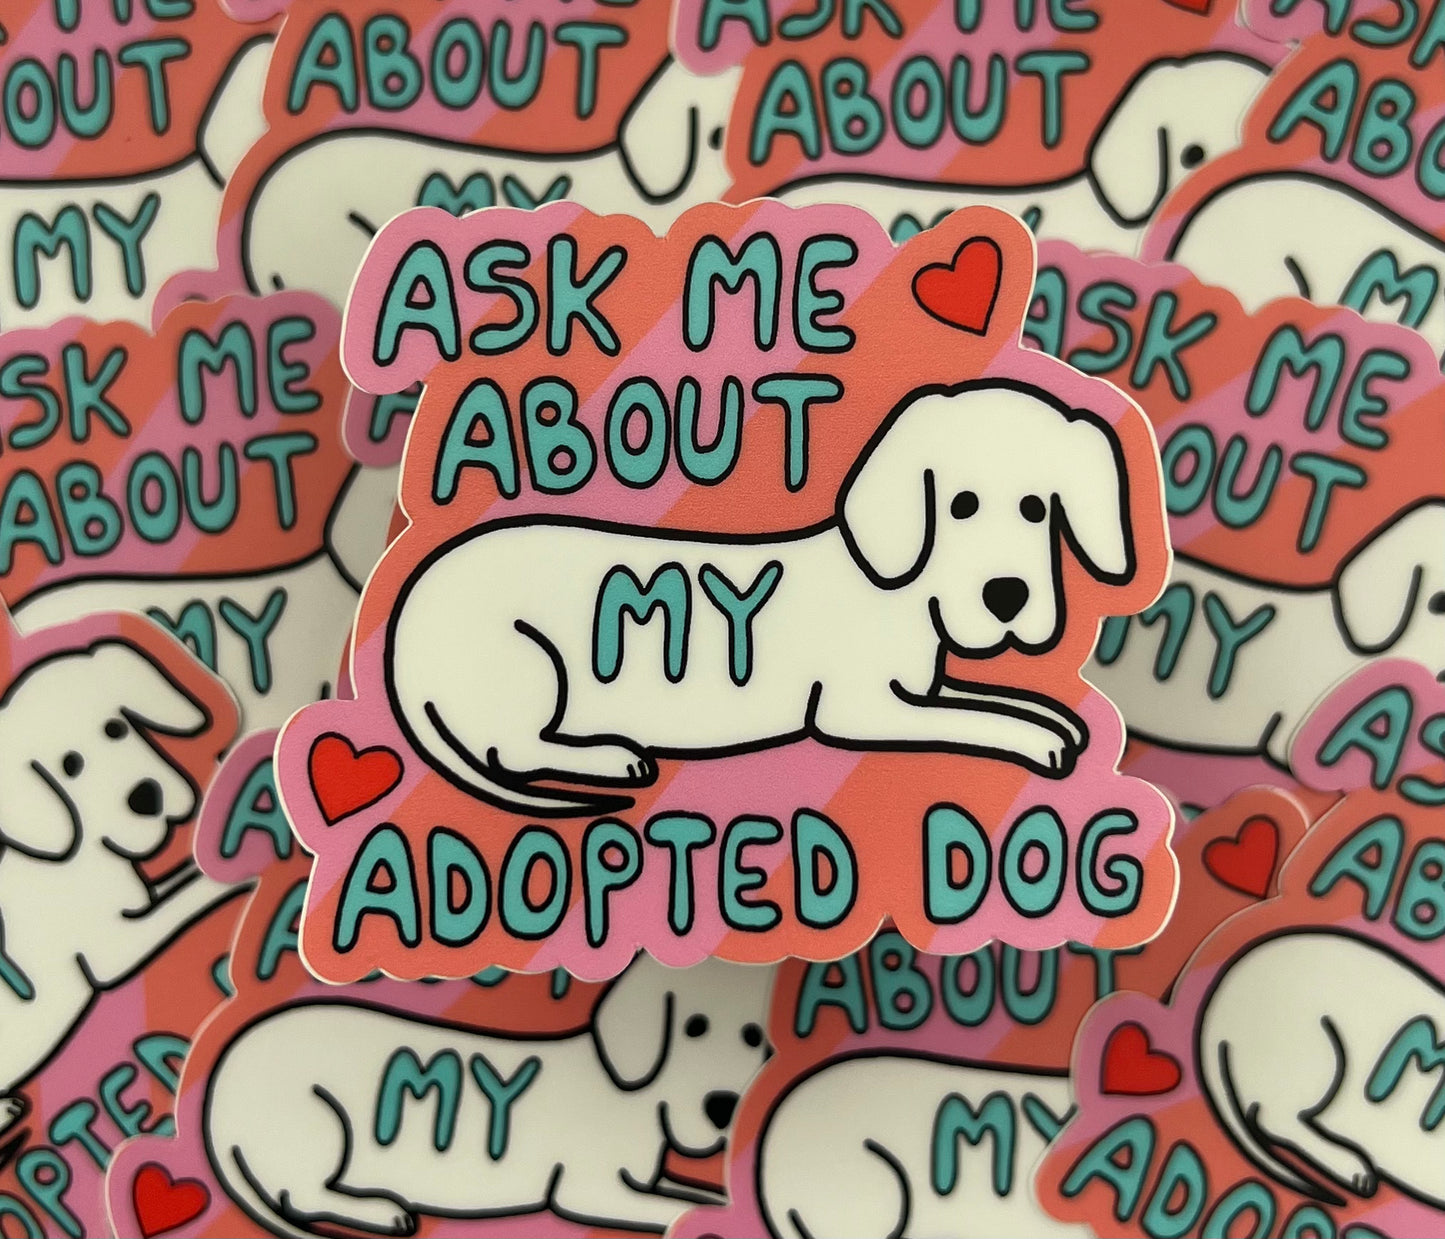 Dog Adoption sticker